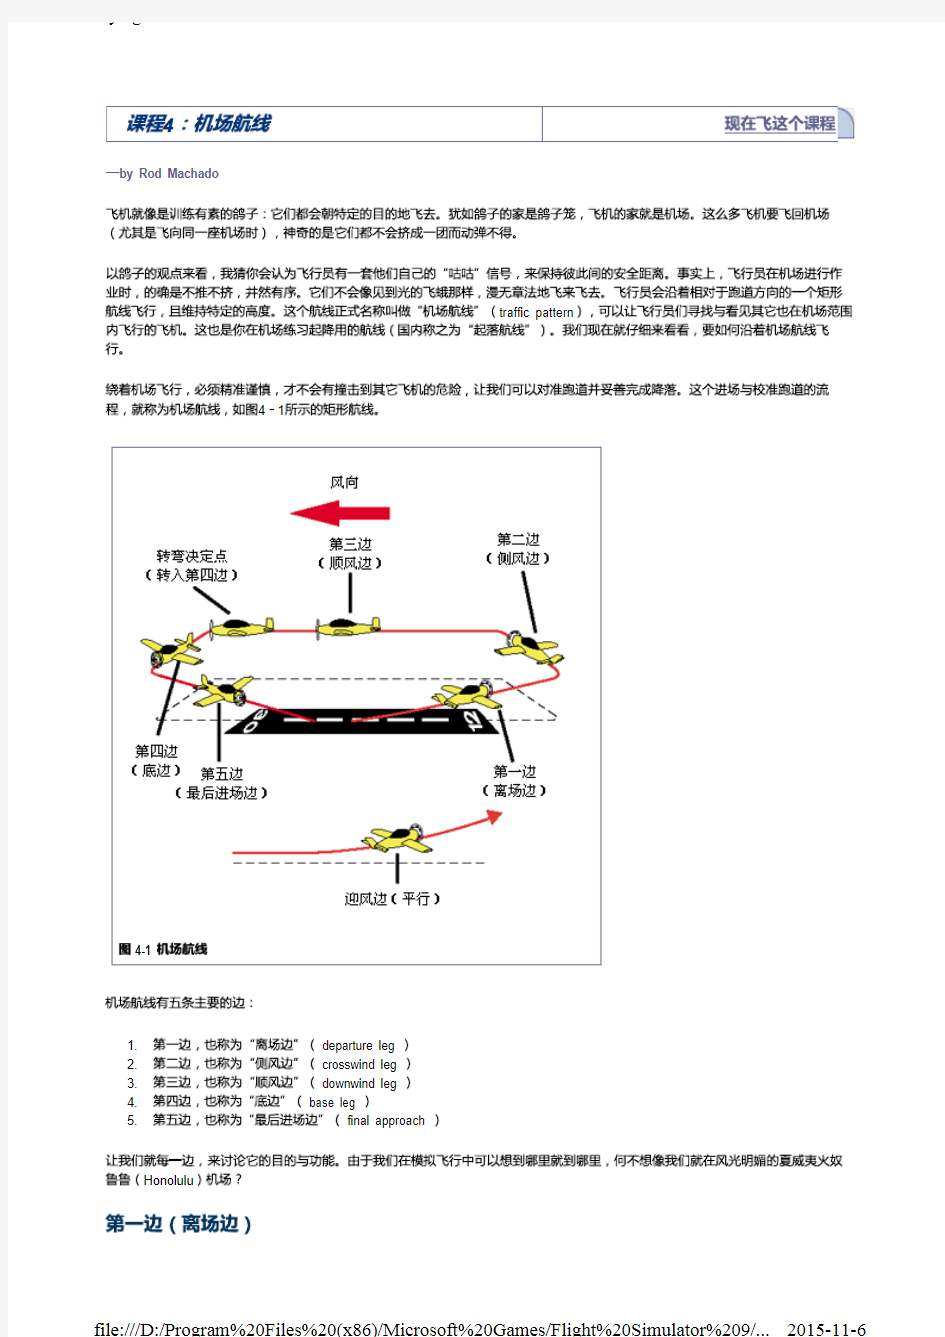 微软模拟飞行2004飞行课程(中文版)2.4. 机场航线